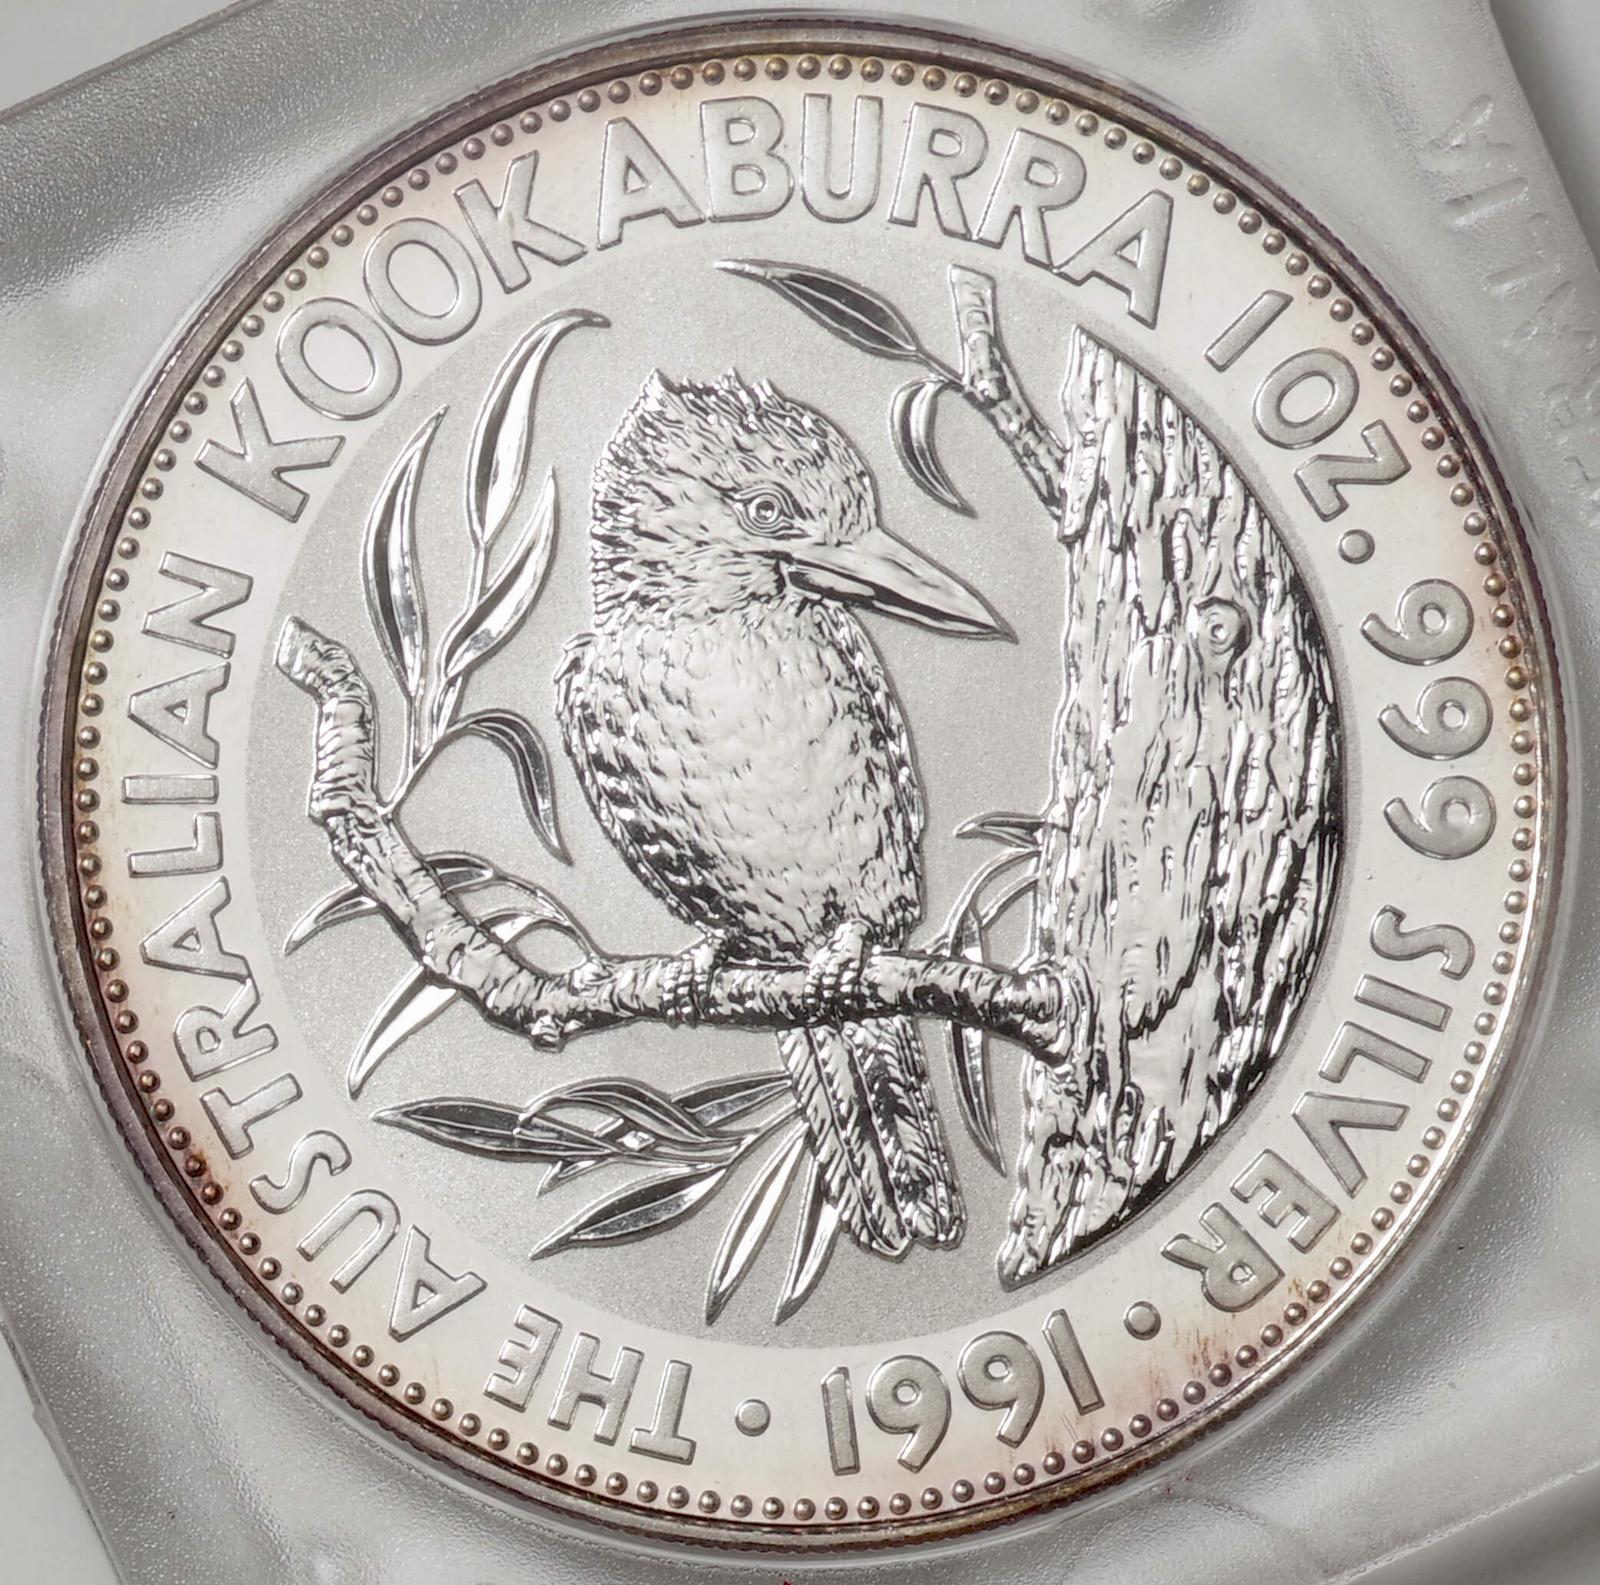 オーストラリア-Australia. ワライカワセミ鳥図 5ドル(1オンス)銀貨 